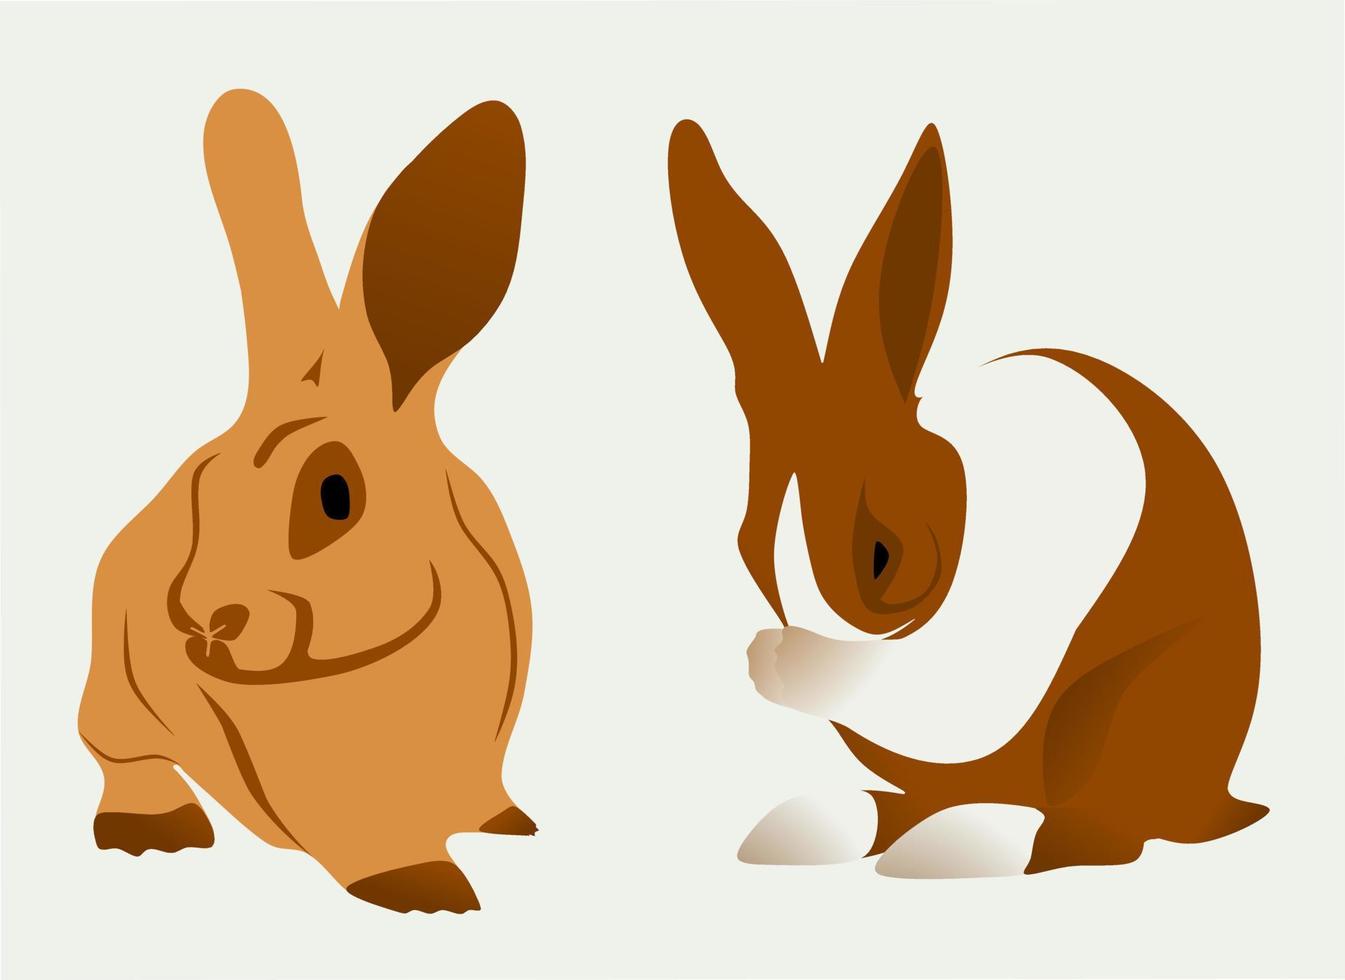 deux éléments graphiques vectoriels de lapin pour la conception vecteur